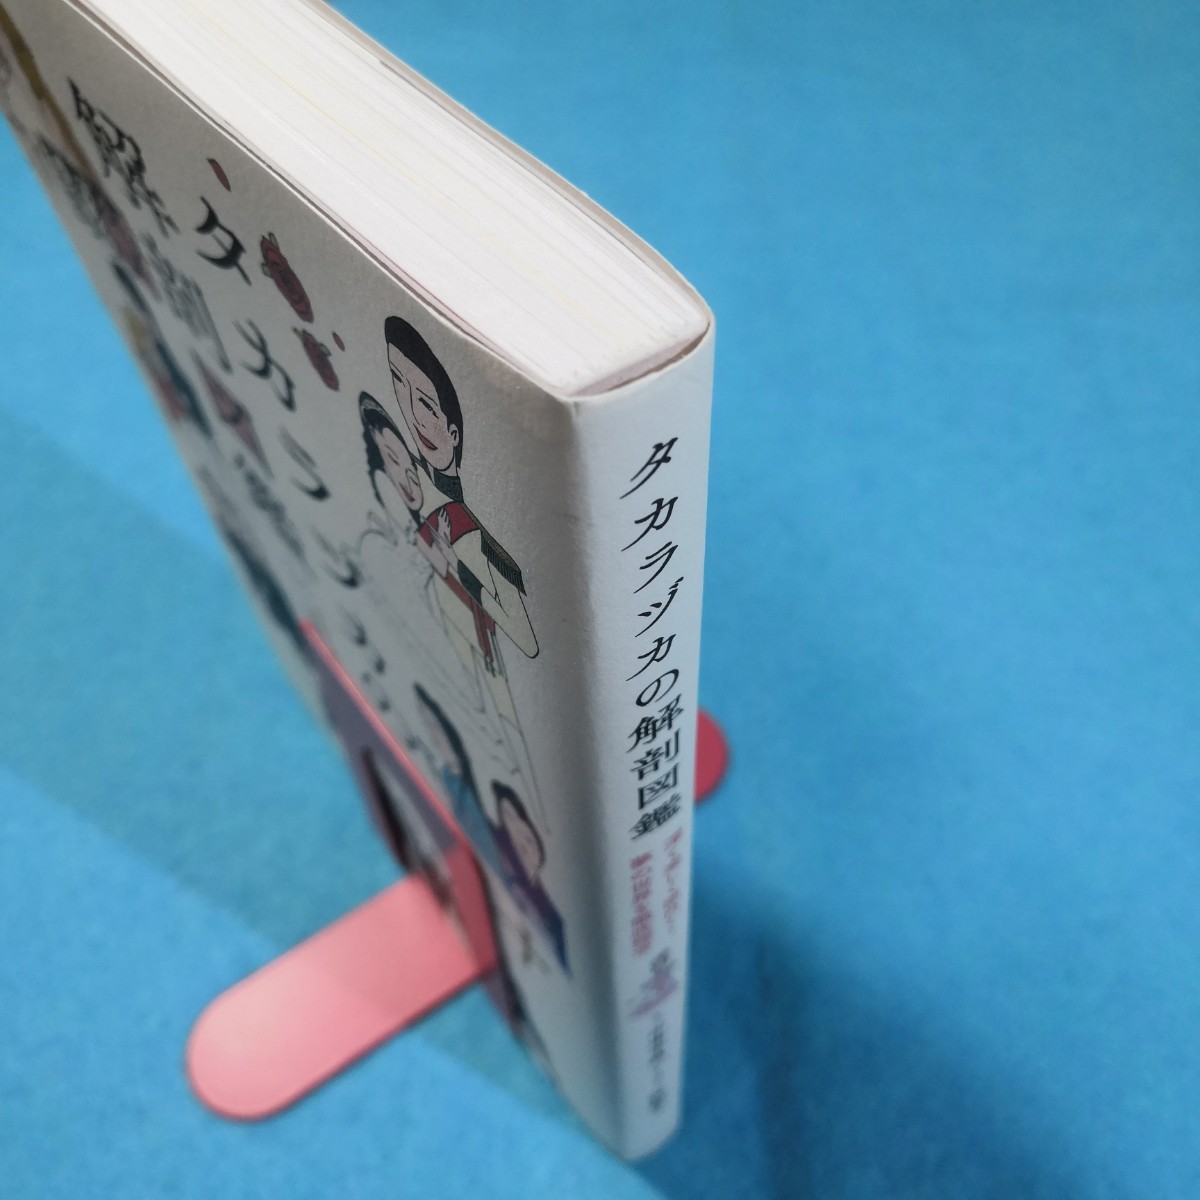  Takara zuka. анатомия иллюстрированная книга глубокий . легко поверхность белый .! сон. мир . тщательный .. средний книга@ тысяч .| документ ...| иллюстрации * бесплатная доставка * анонимность рассылка 